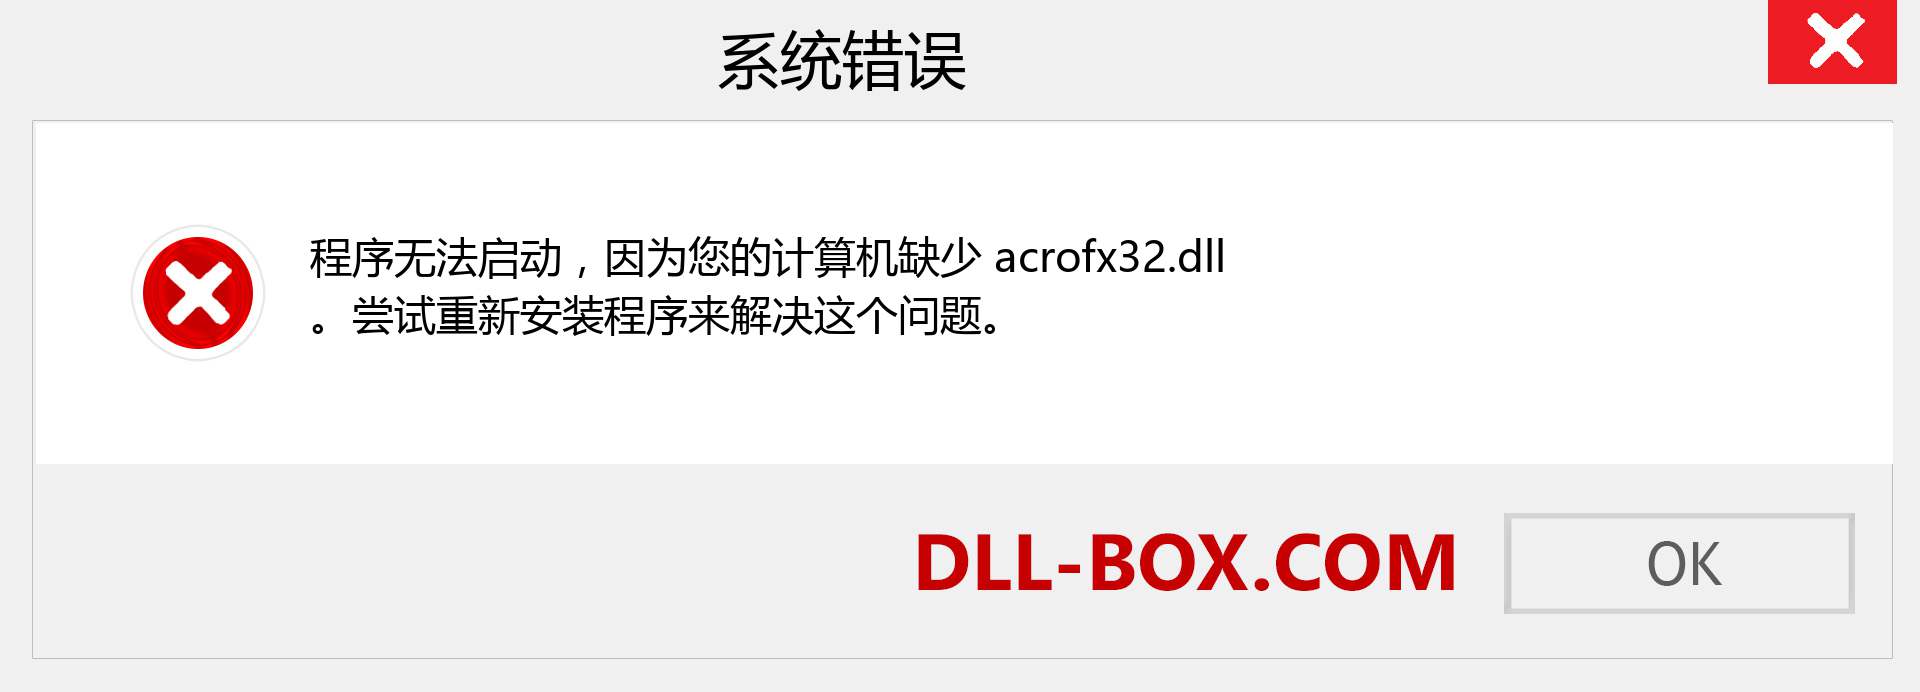 acrofx32.dll 文件丢失？。 适用于 Windows 7、8、10 的下载 - 修复 Windows、照片、图像上的 acrofx32 dll 丢失错误